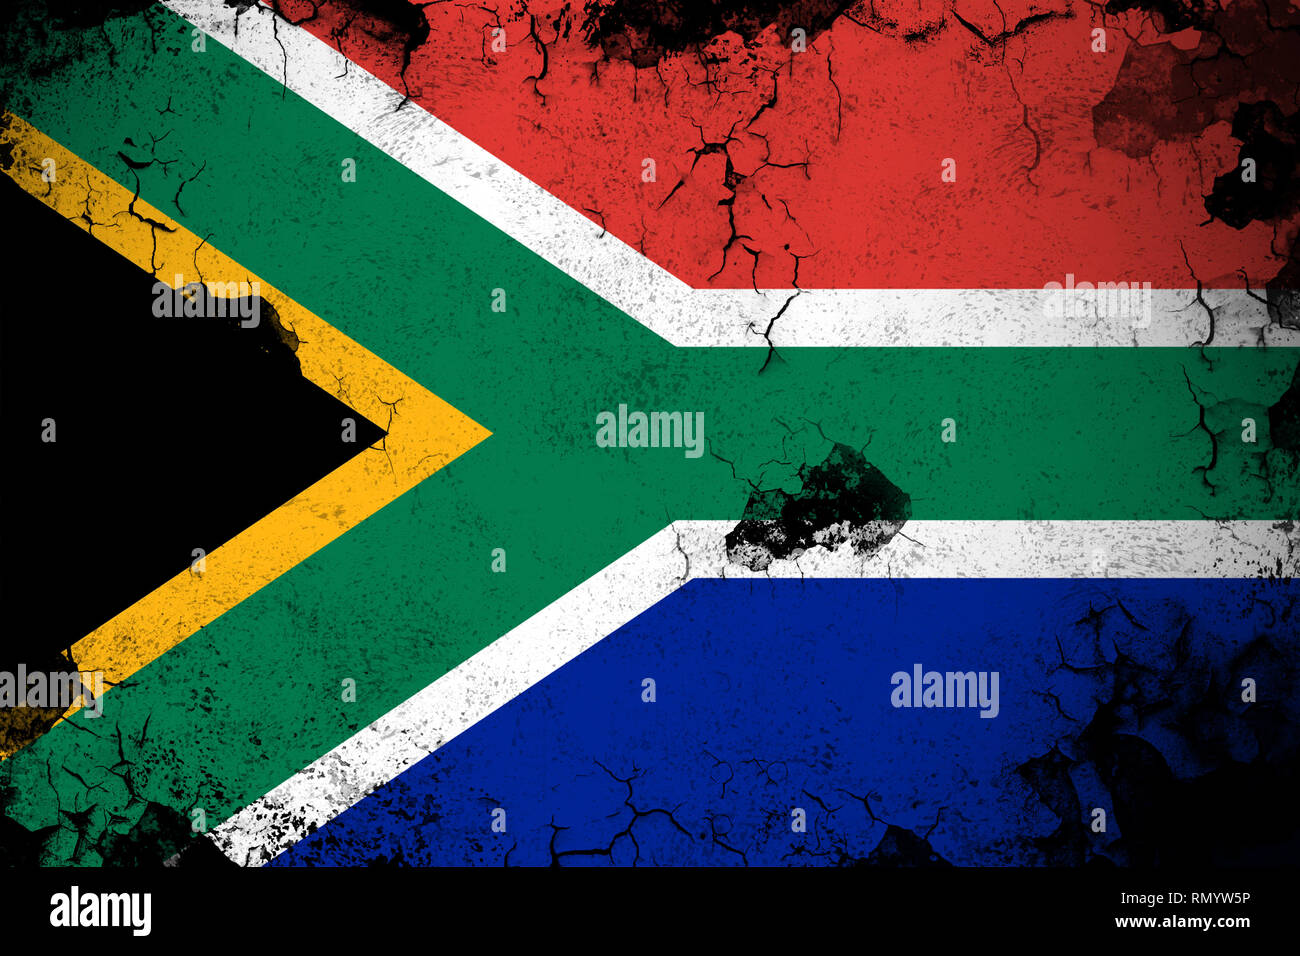 Afrique du Sud drapeau sale grunge et illustration. Parfait pour les fins de l'arrière-plan ou de texture. Banque D'Images